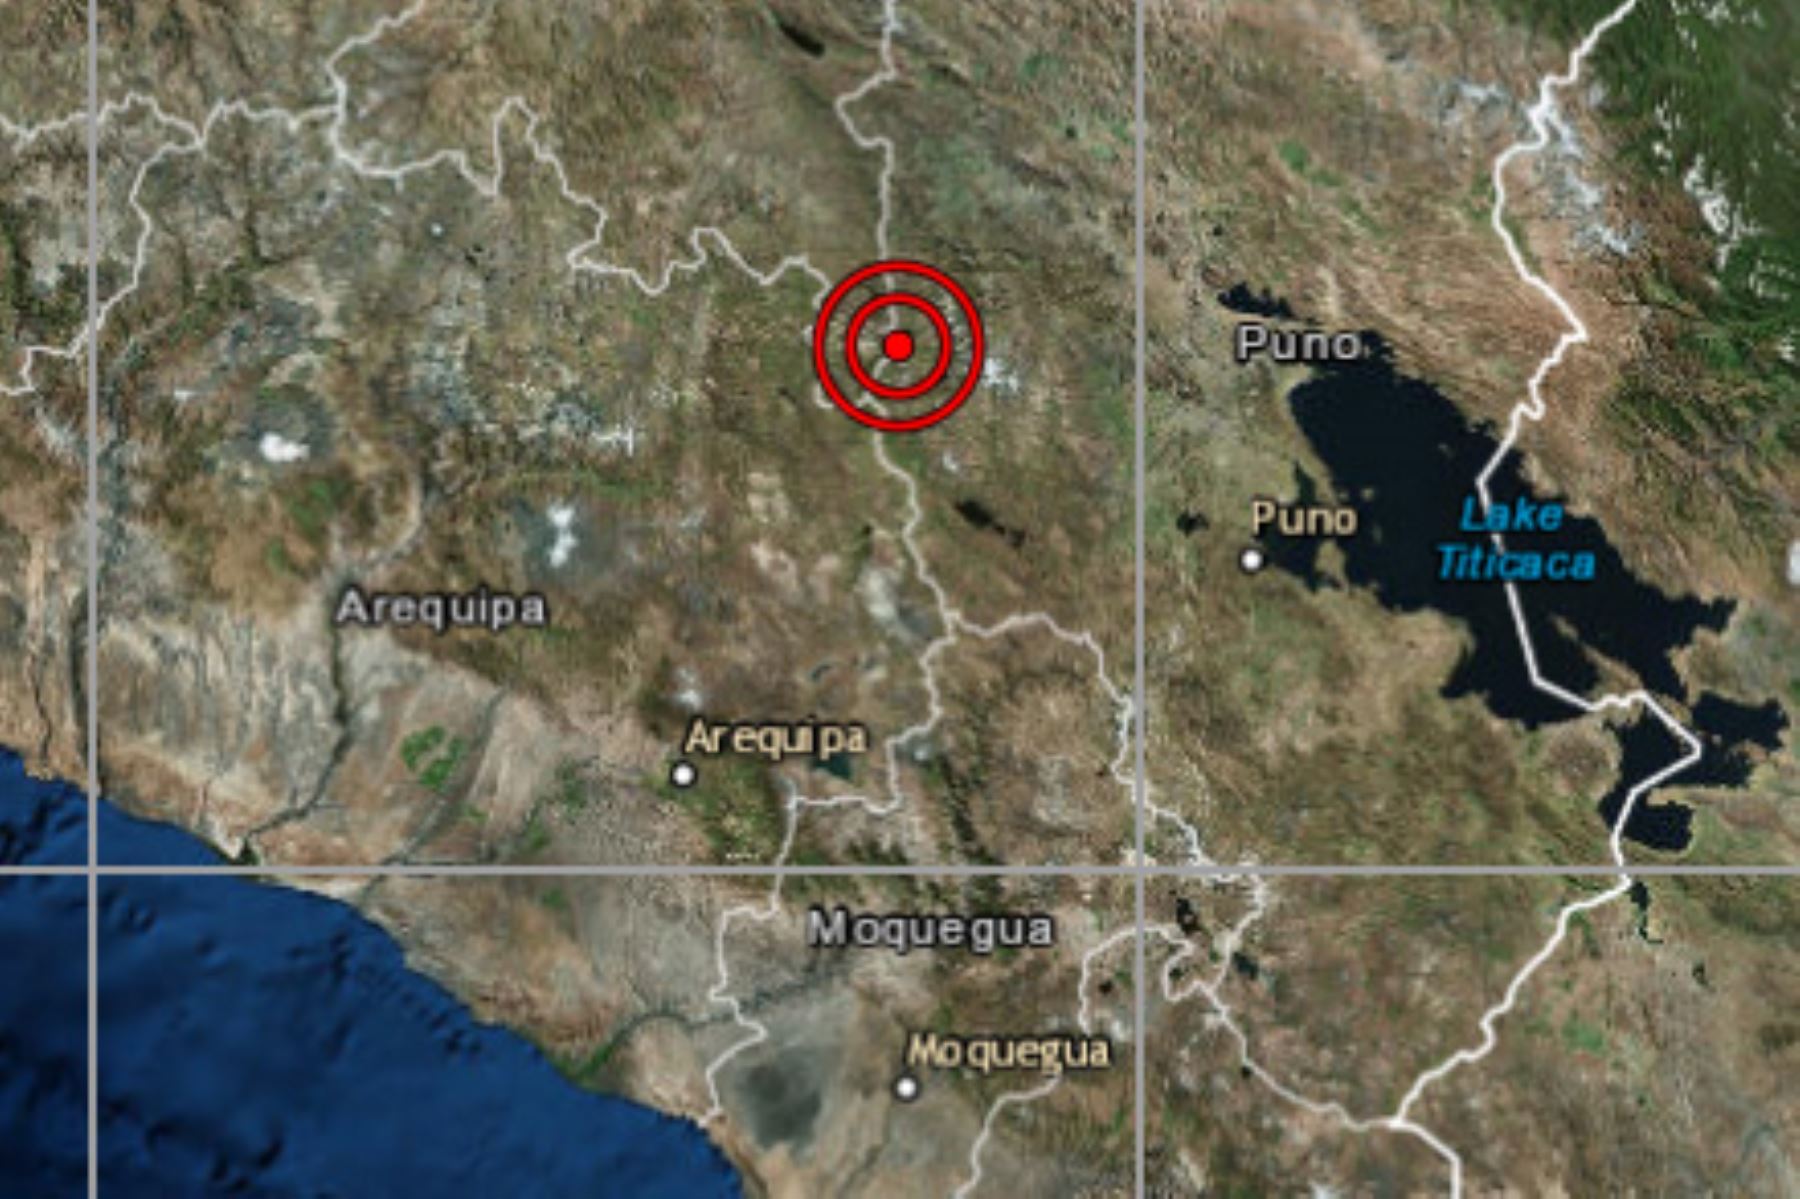 Distrito de Ocuviri ha registrado cuatro sismos en lo que va del día, según reporte del IGP. ANDINA/Difusión